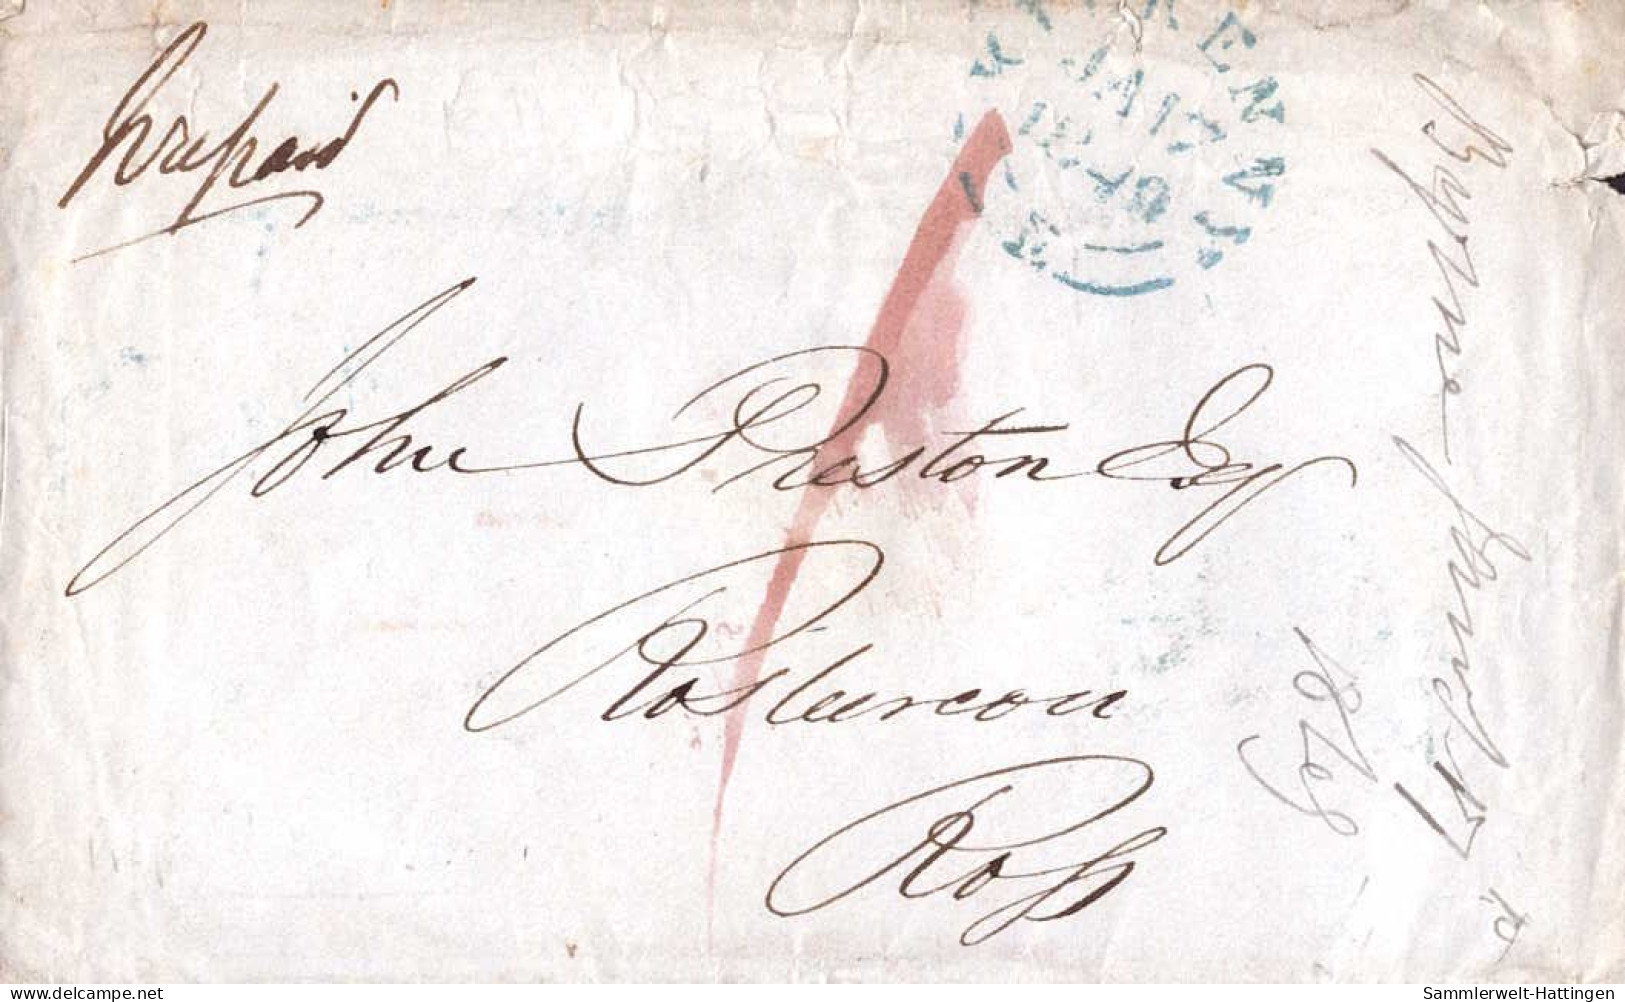 603061 | Ireland 1849  Prepaid Mail From Kilkenny To Ross Island  | -, -, - - Prephilately